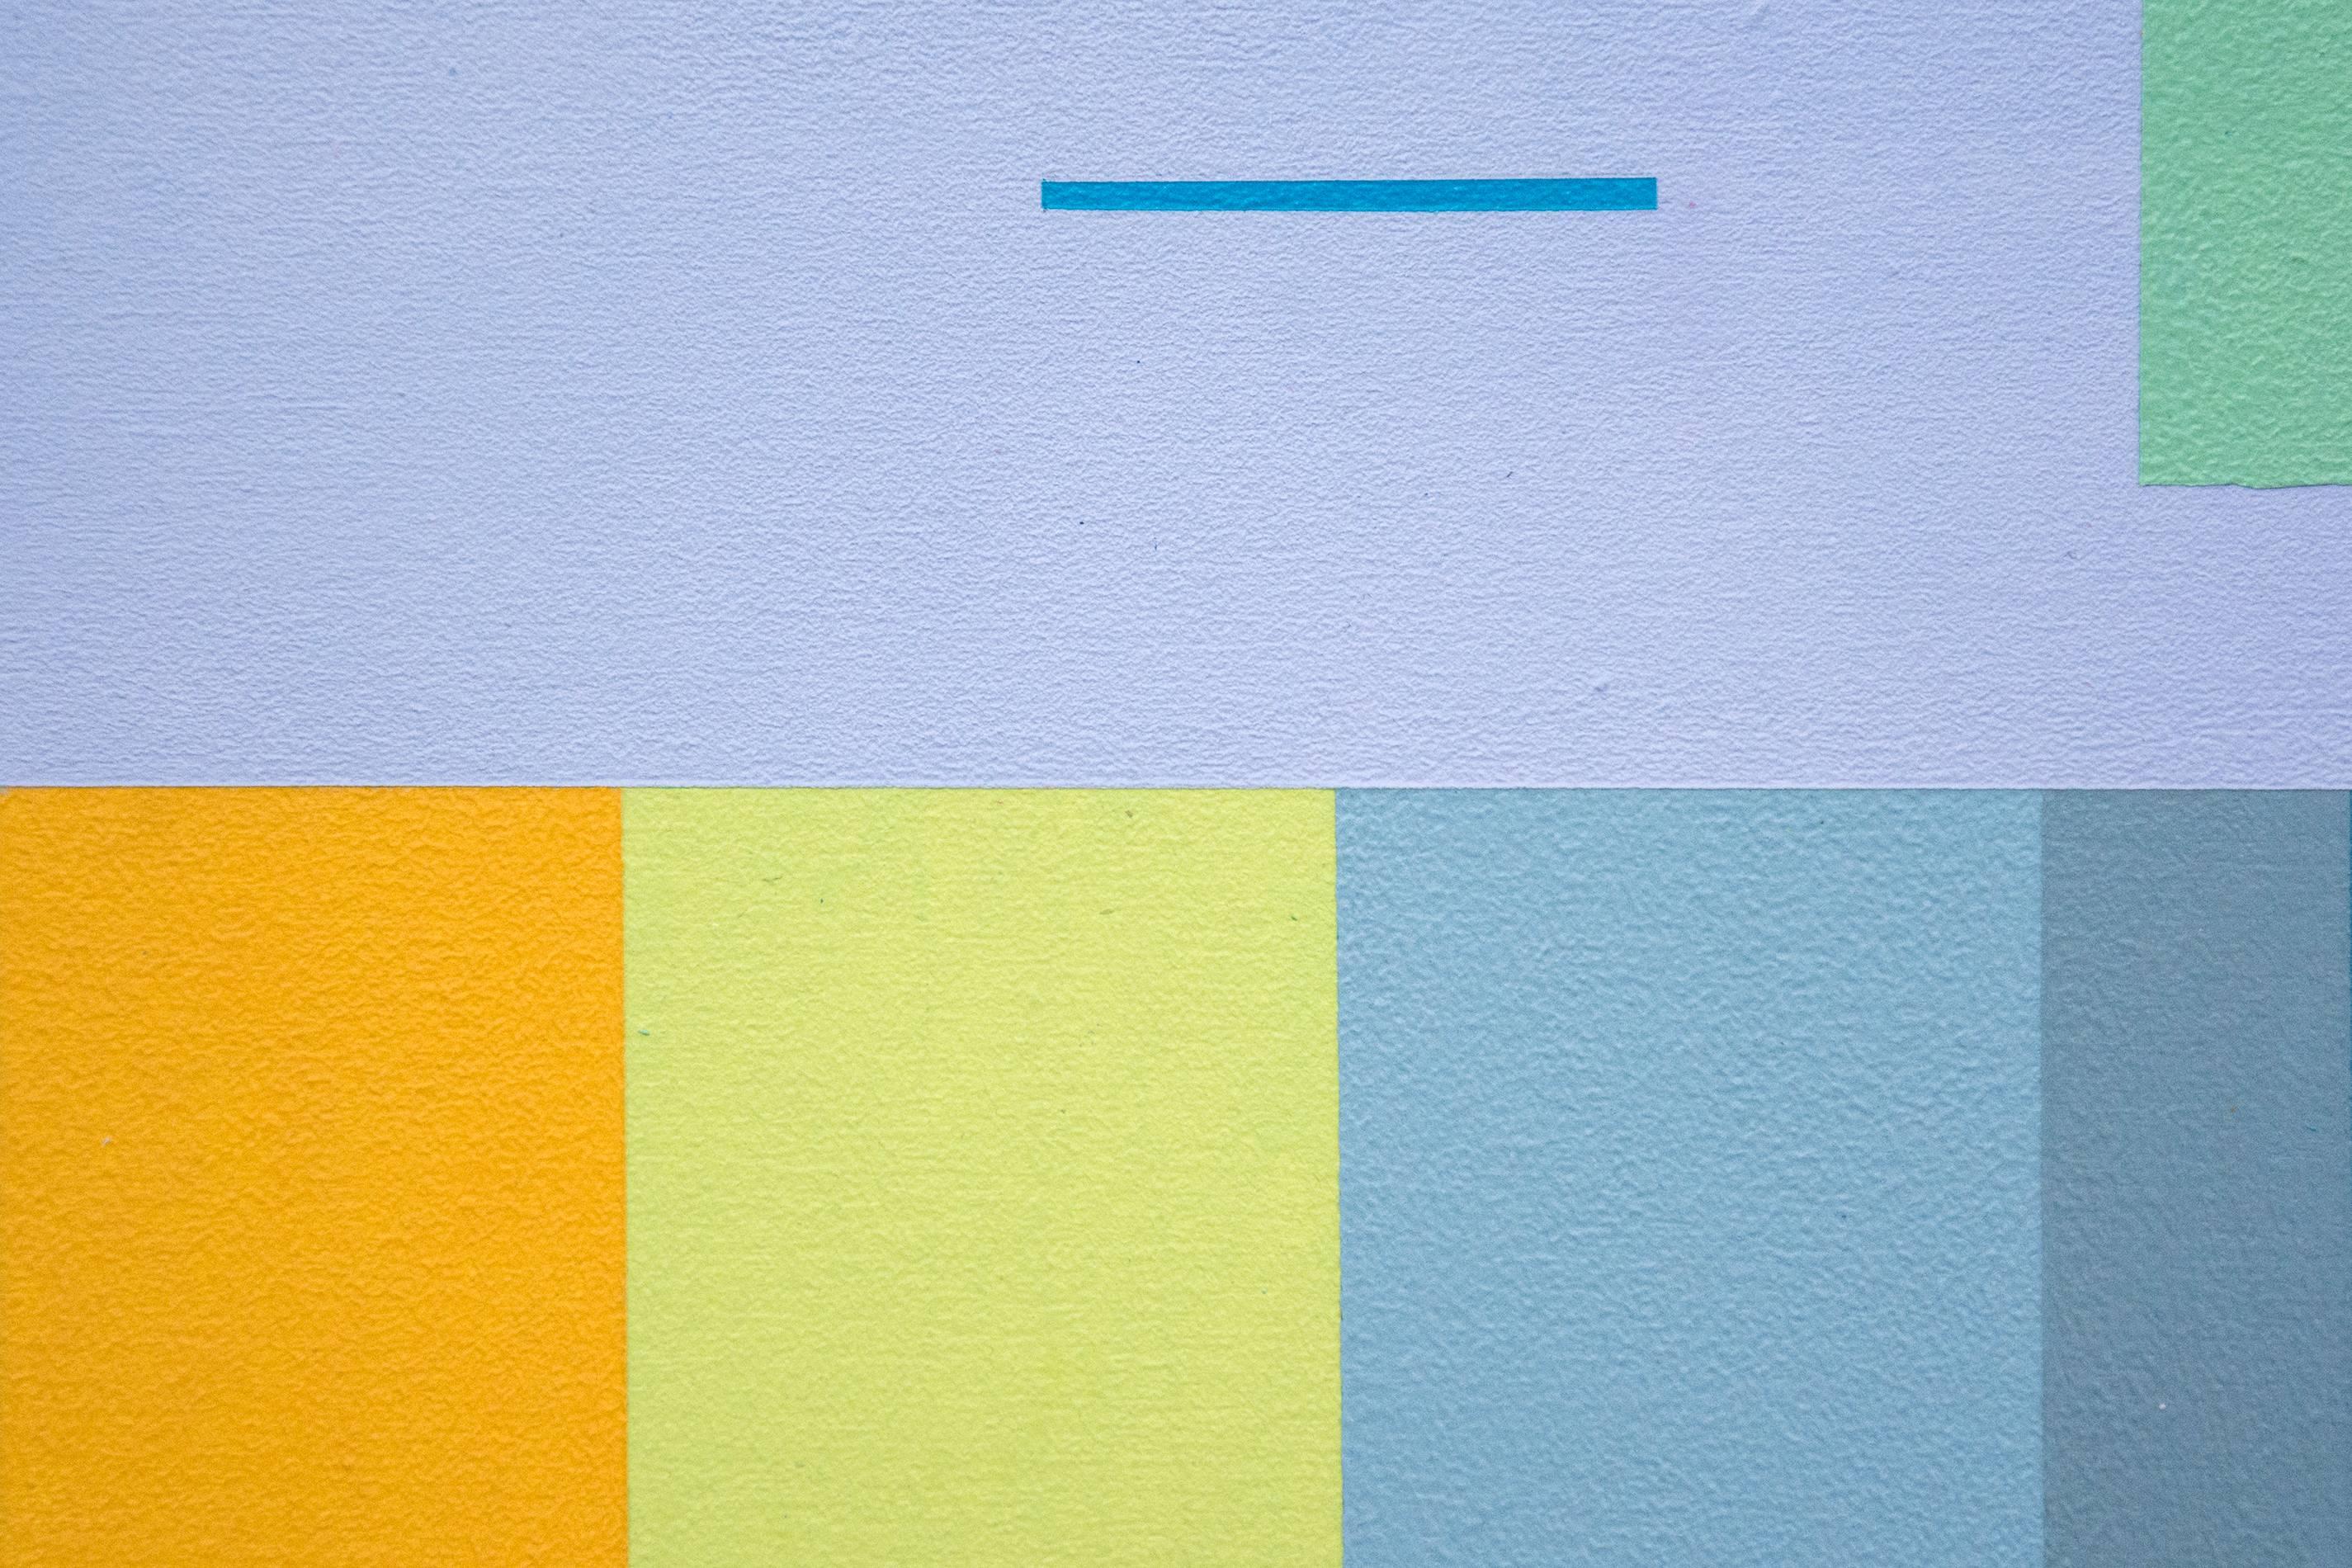 Ein Stakkato aus feinen horizontalen und vertikalen Strichen in Karminrot, Weiß und Türkis erhellt eine horizontale Komposition aus pastellfarbenem Blau, Rosa, Gelb und Grün auf blauem Schiefergrund in diesem Acryl auf Tafel. Diese präzise und doch